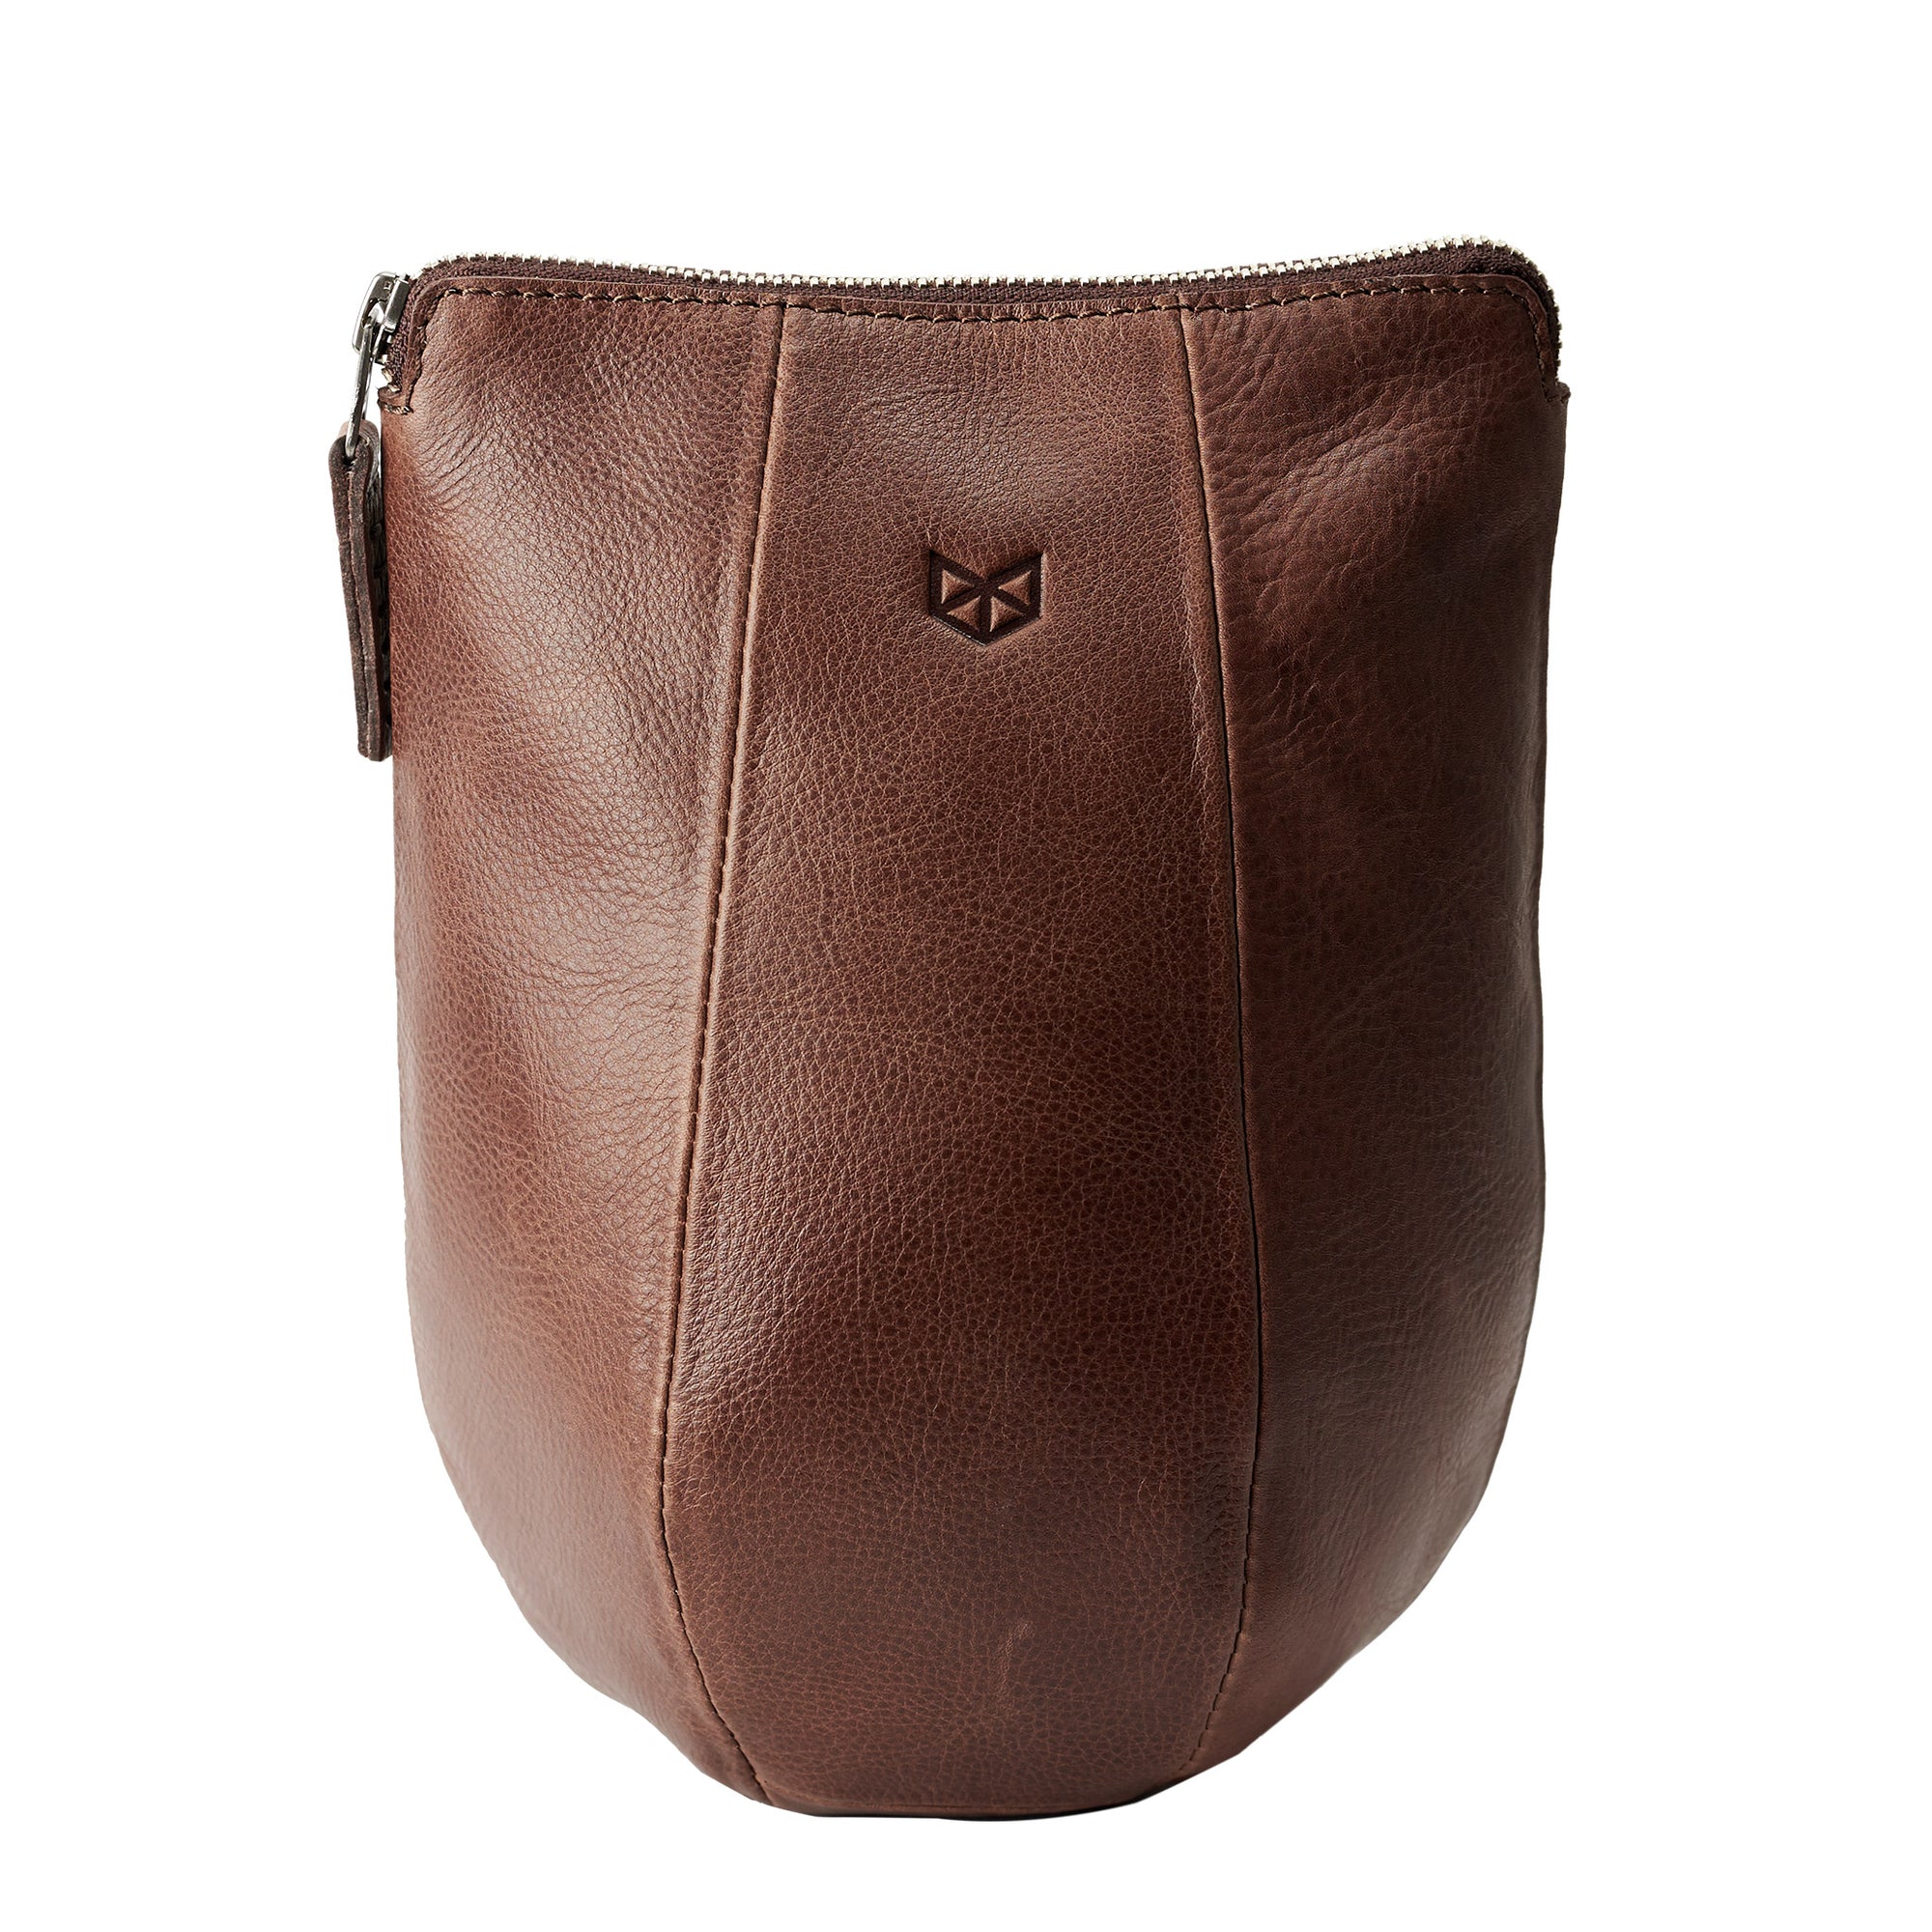 Unique Brown leather toiletry bag. Leather boxer dopp kit for men. Custom groomsmen gifts. Travel bag for men